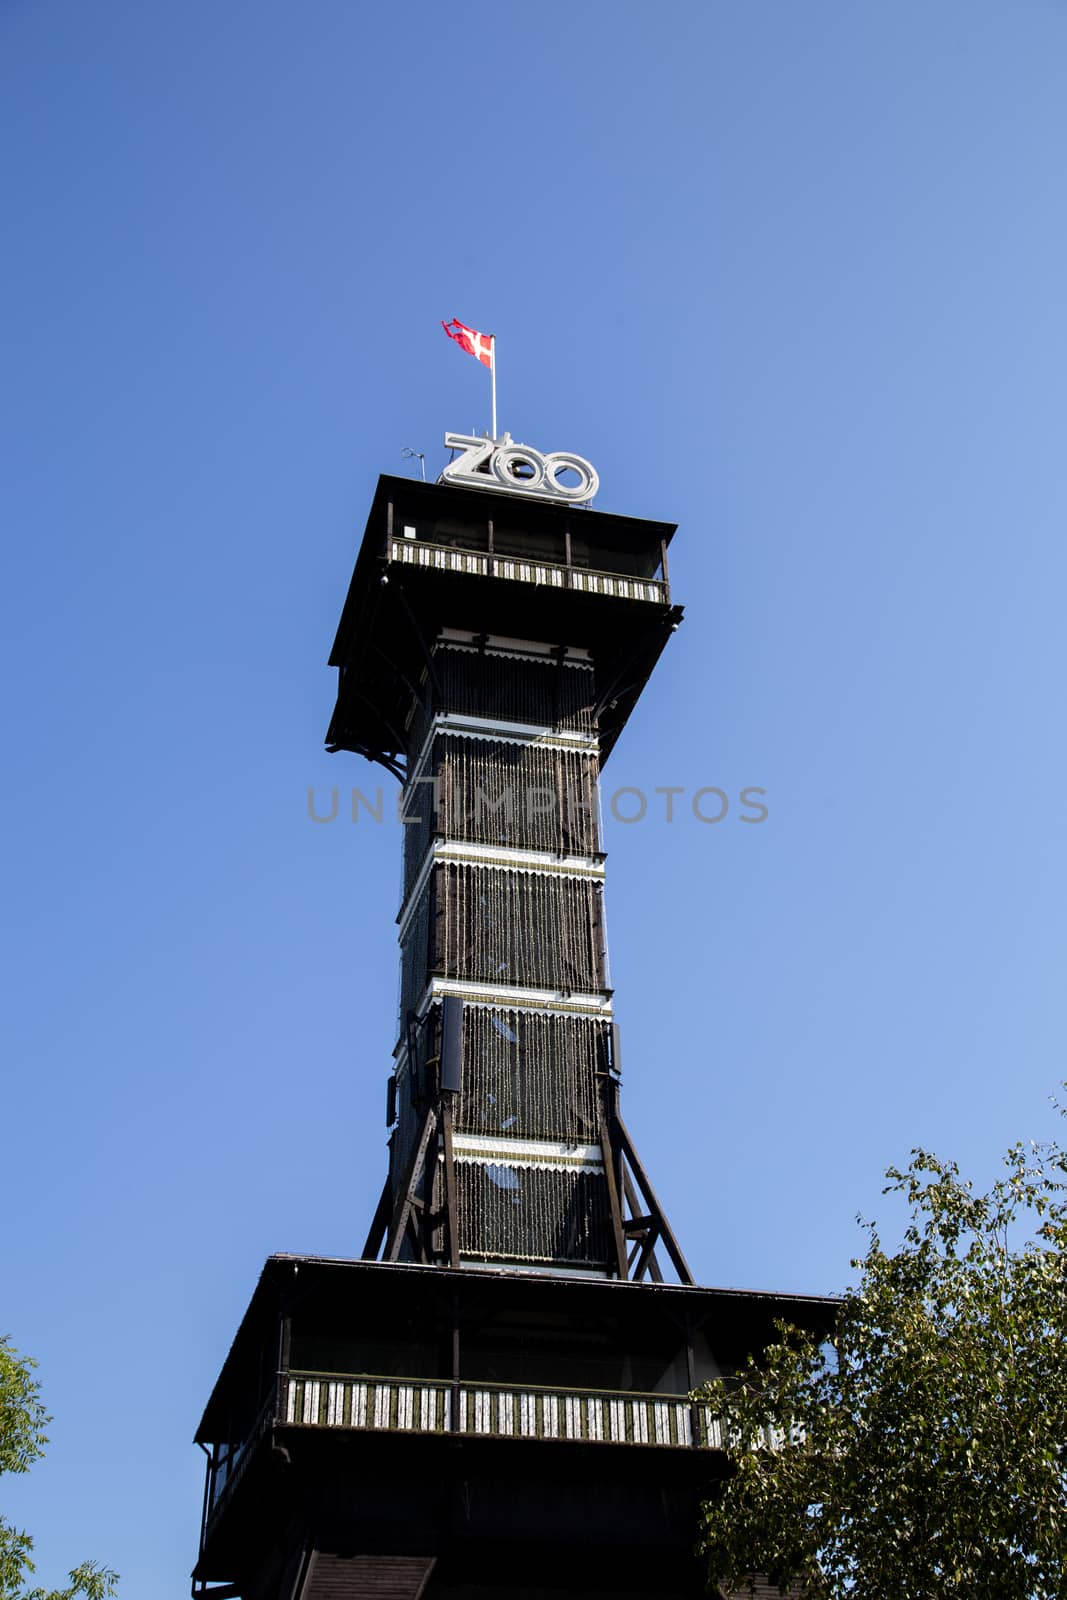 Copenhagen, Denmark - August 25, 2019: The observational tower of the zoo in Copenhagen.